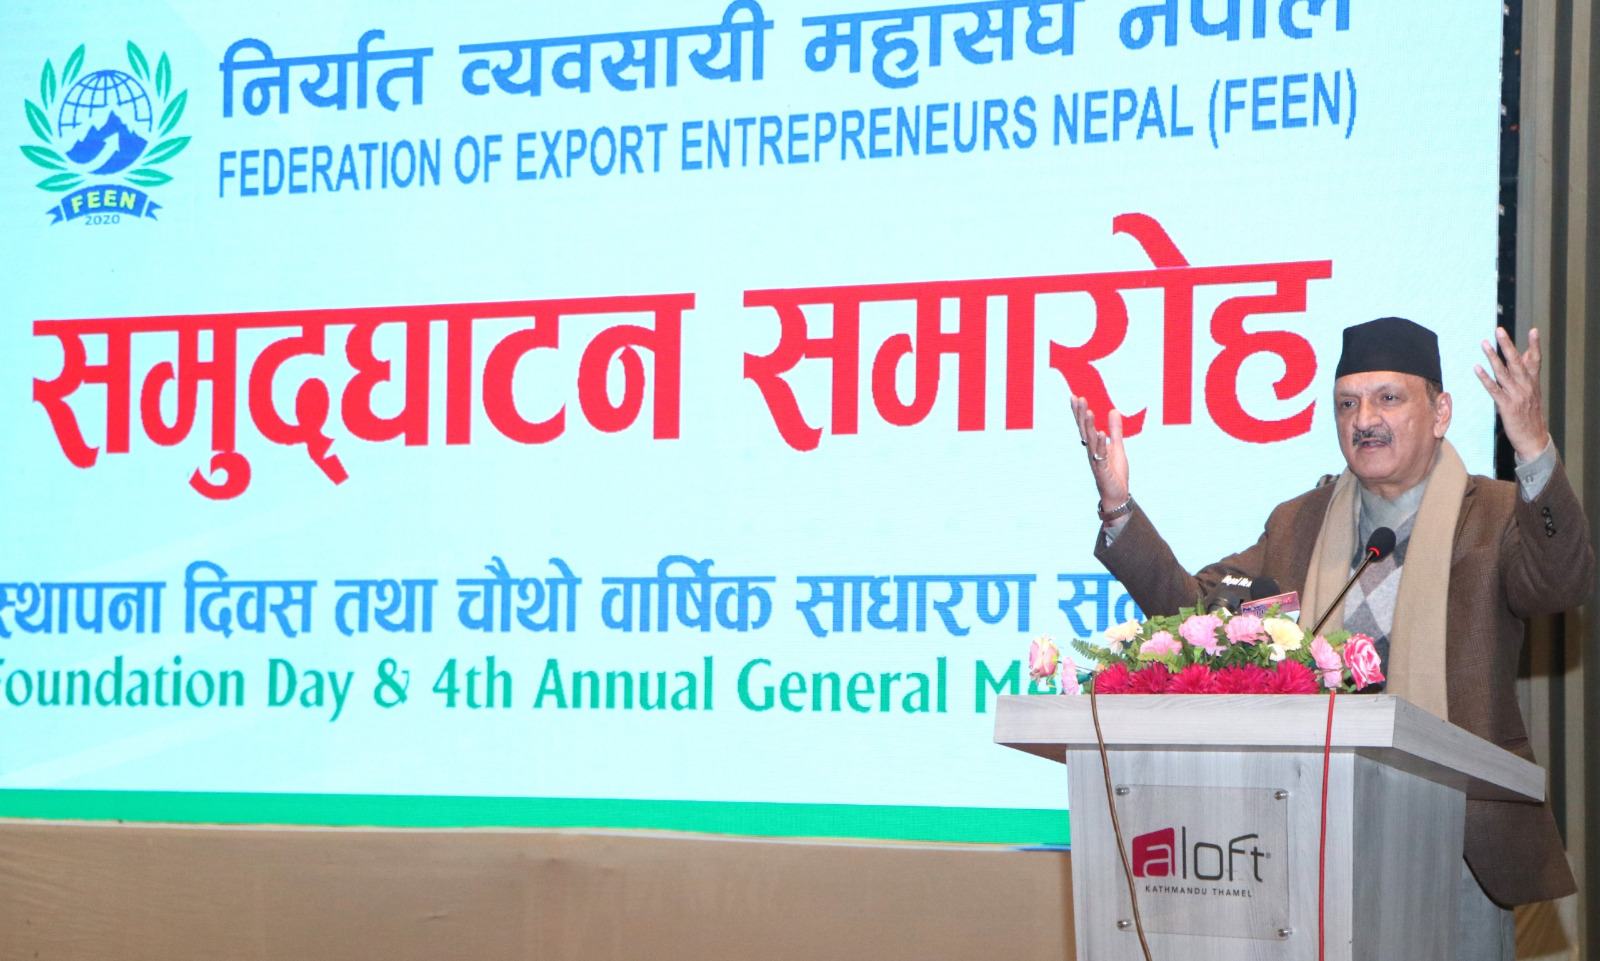 निर्यातका लागि नेपाली उत्पादनहरु मौलिक हुनुपर्नेमा अर्थमन्त्री डा. महतको जोड